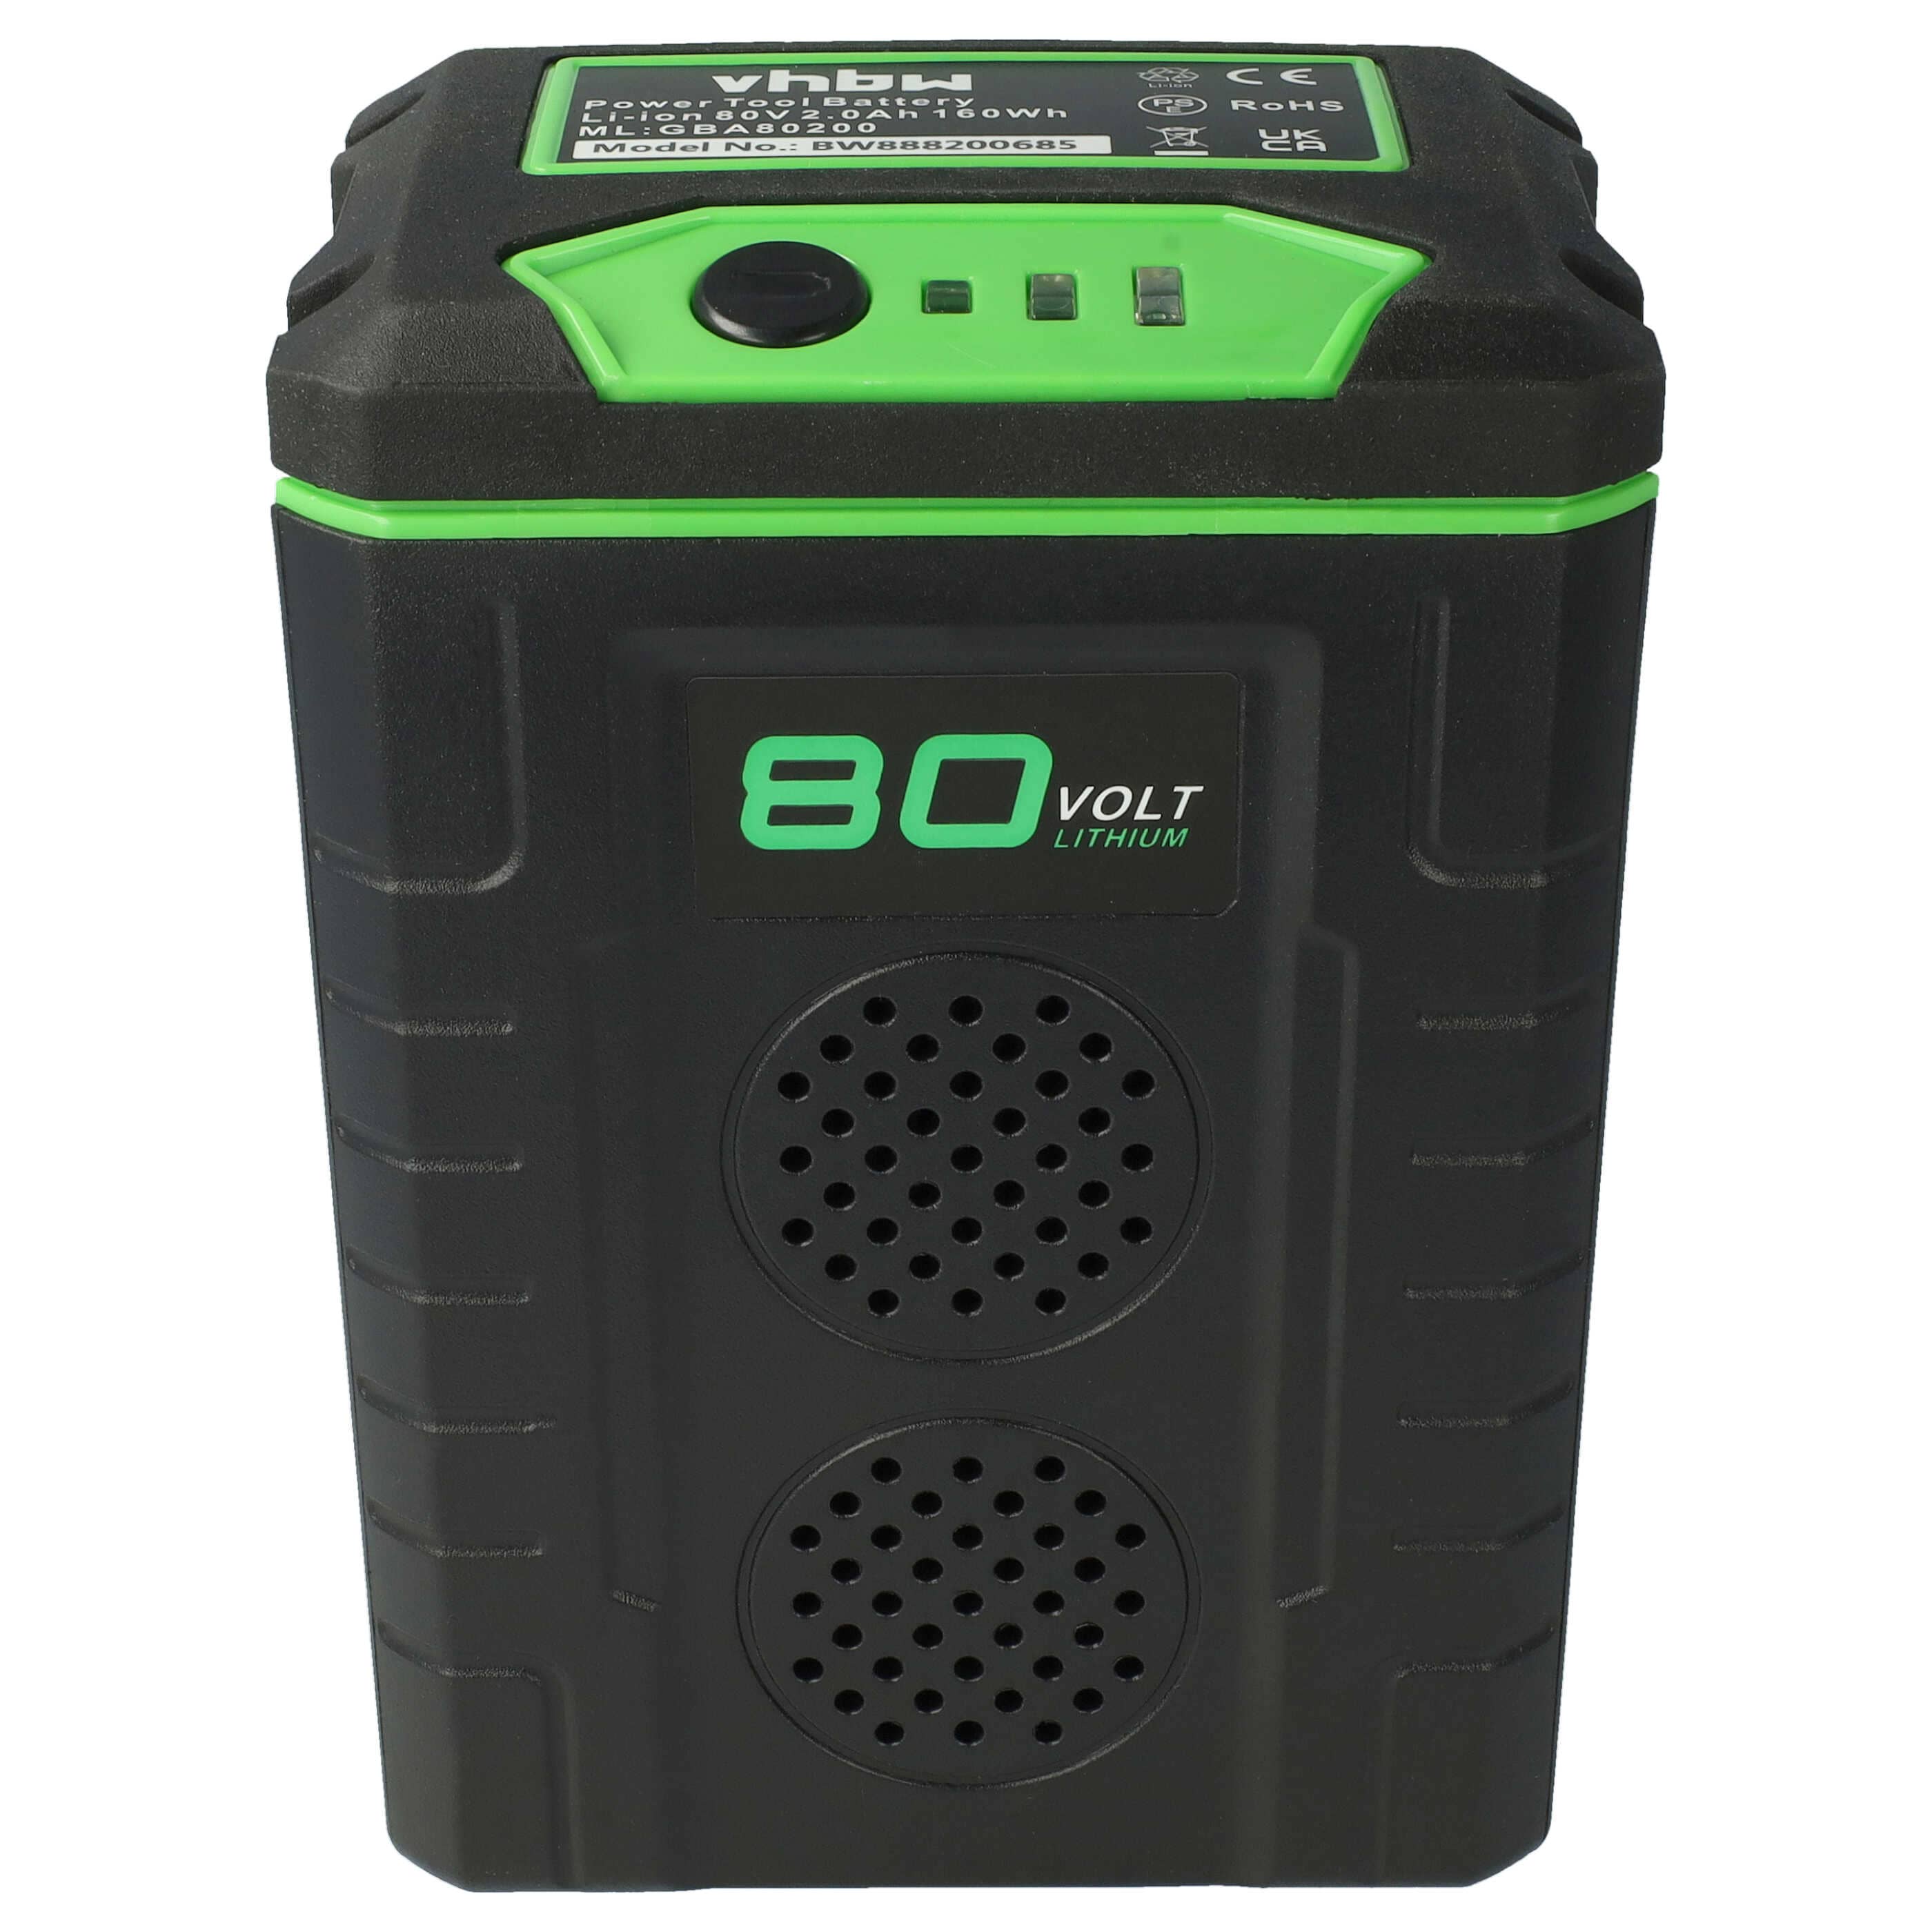 Batterie remplace Remarc 82V430G pour outil de jardinage - 2500mAh 80V Li-ion